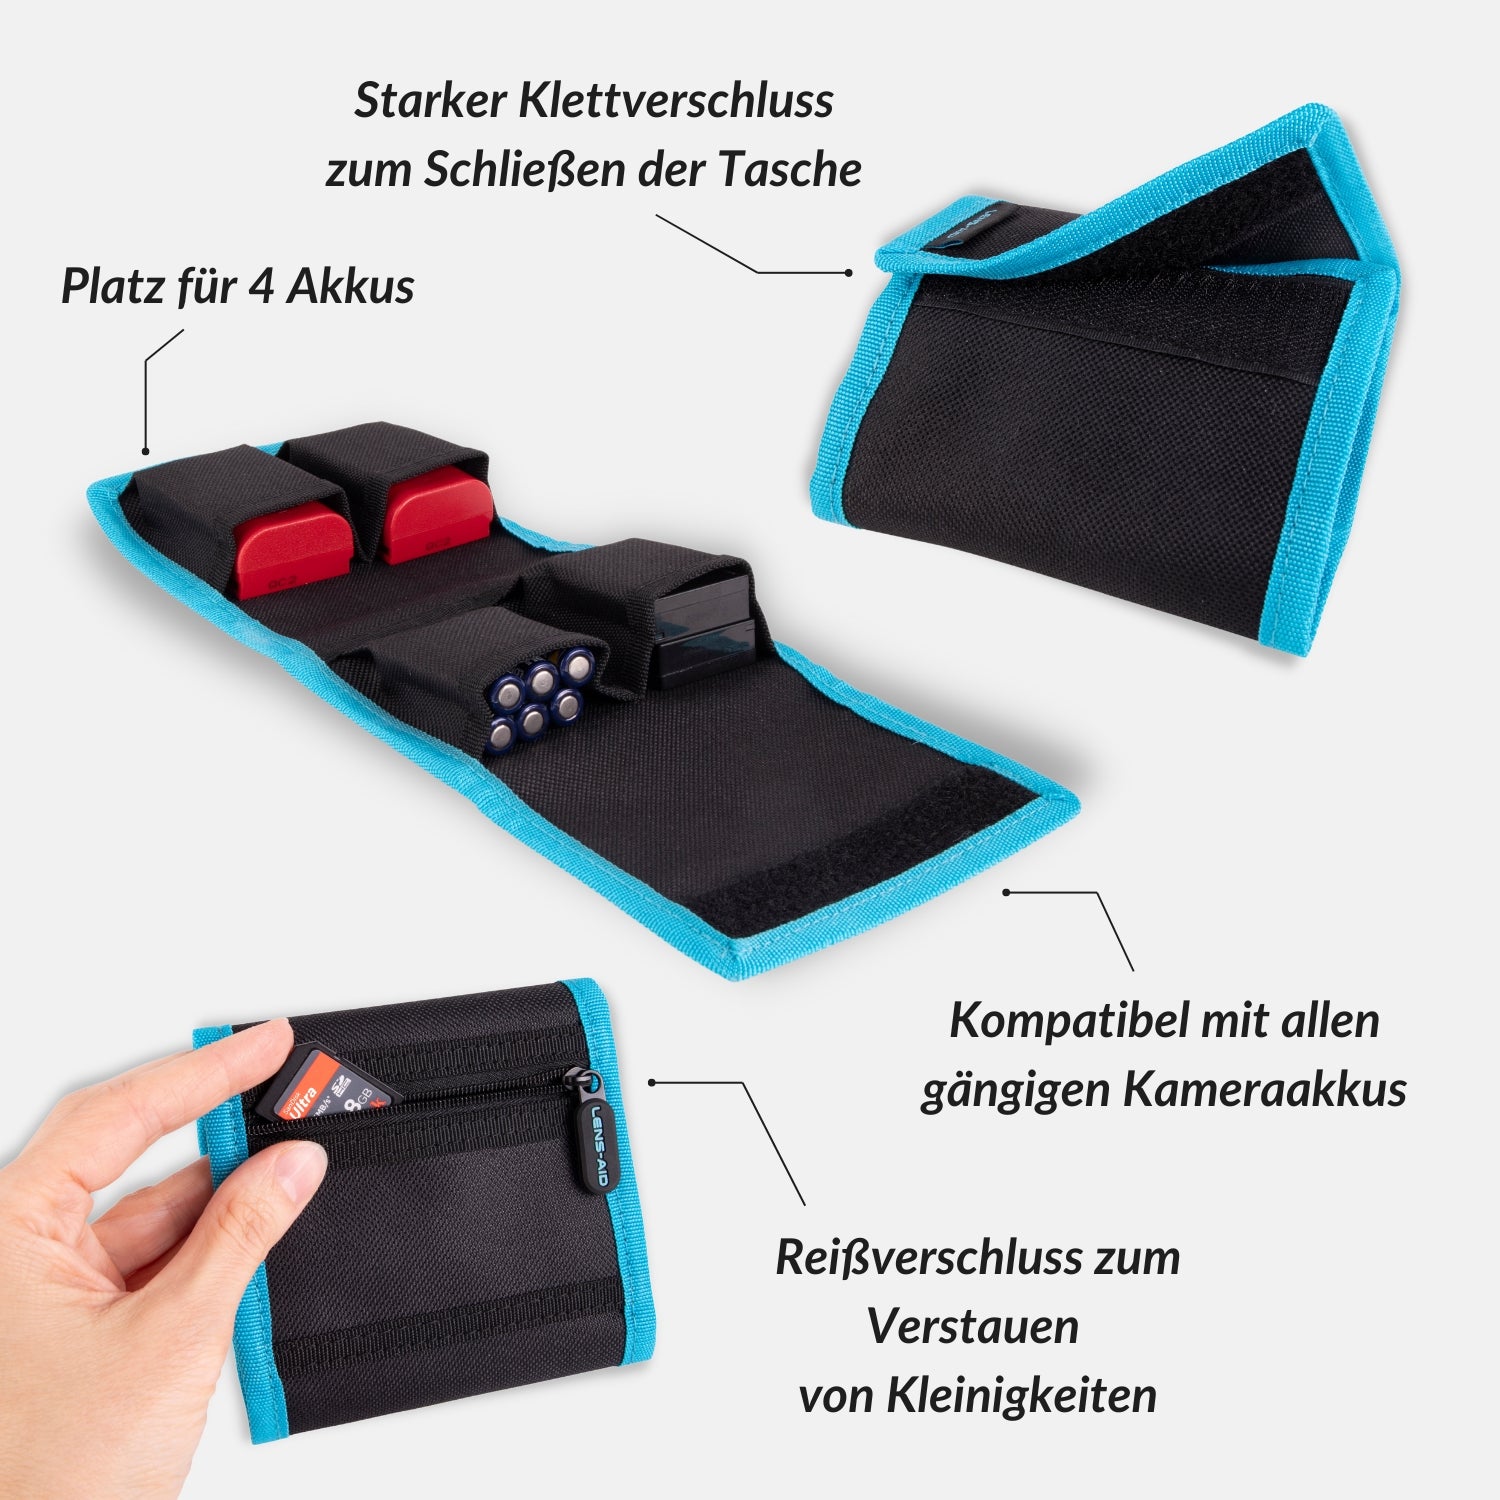 Kamera Akku-Tasche für bis zu 4 Akkus & Batterien